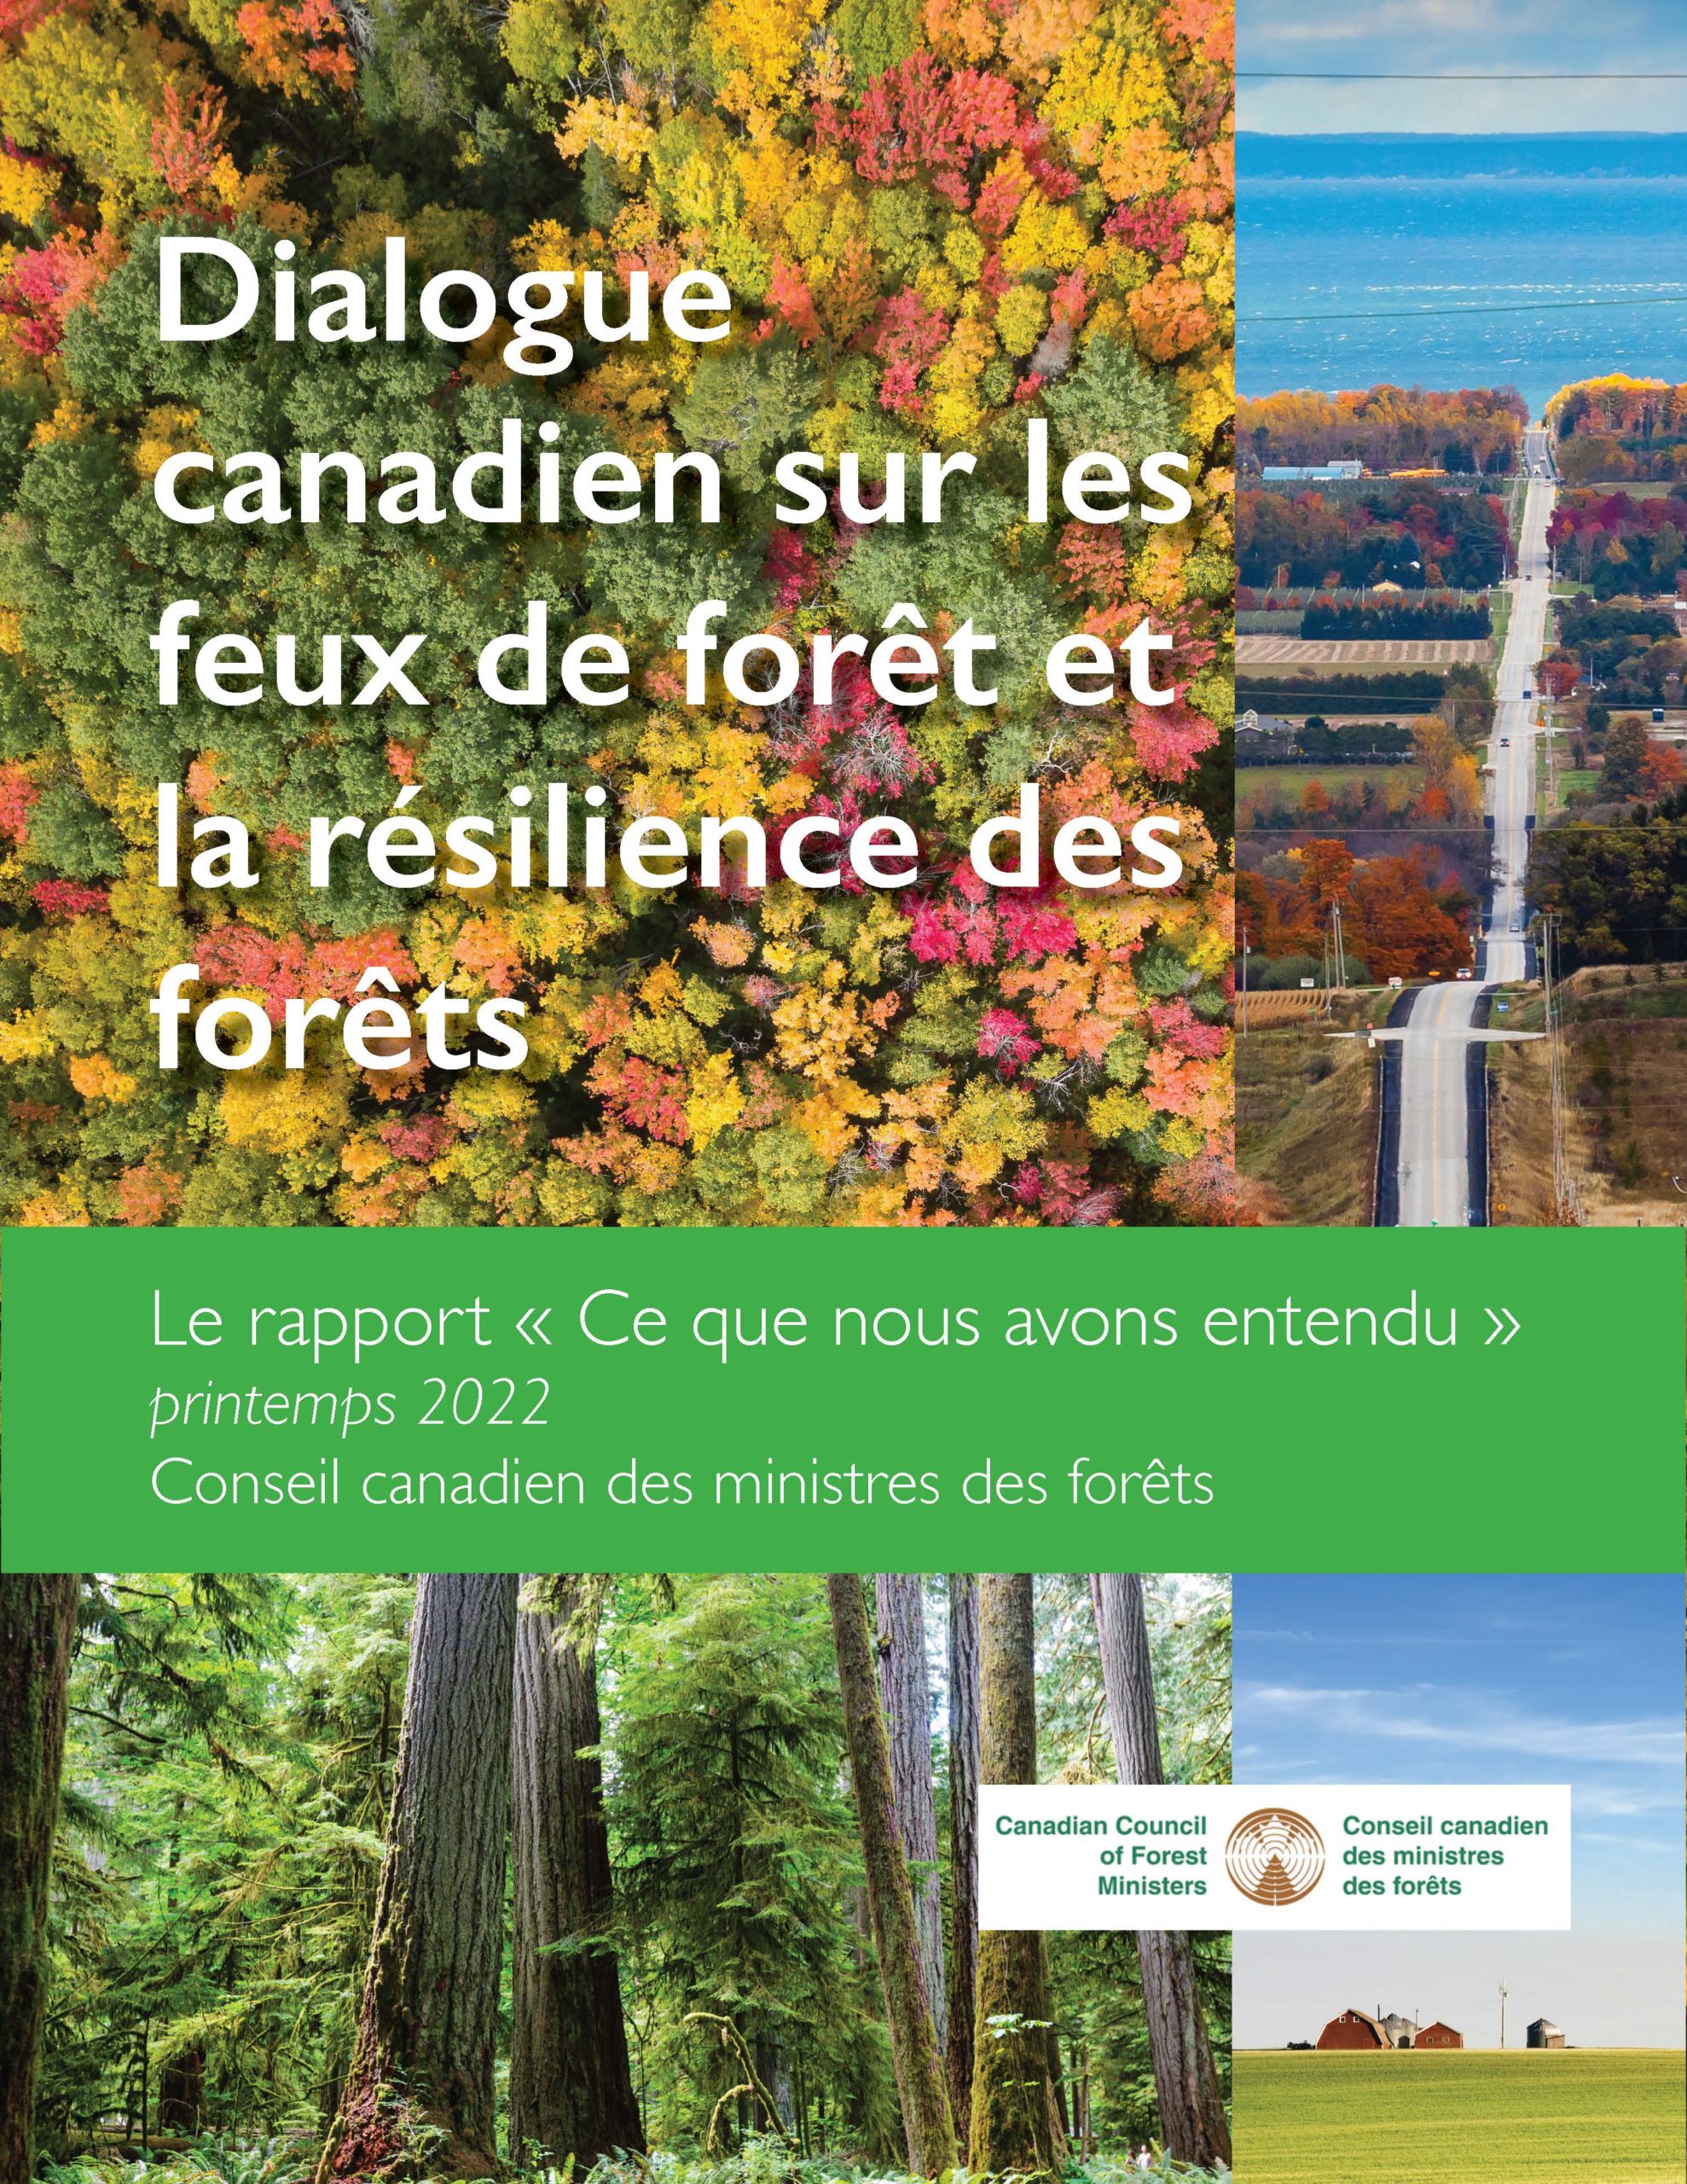 Dialogue canadien sur les feux de forêt et la résilience des forêts : Le rapport « Ce que nous avons entendu », printemps 2022